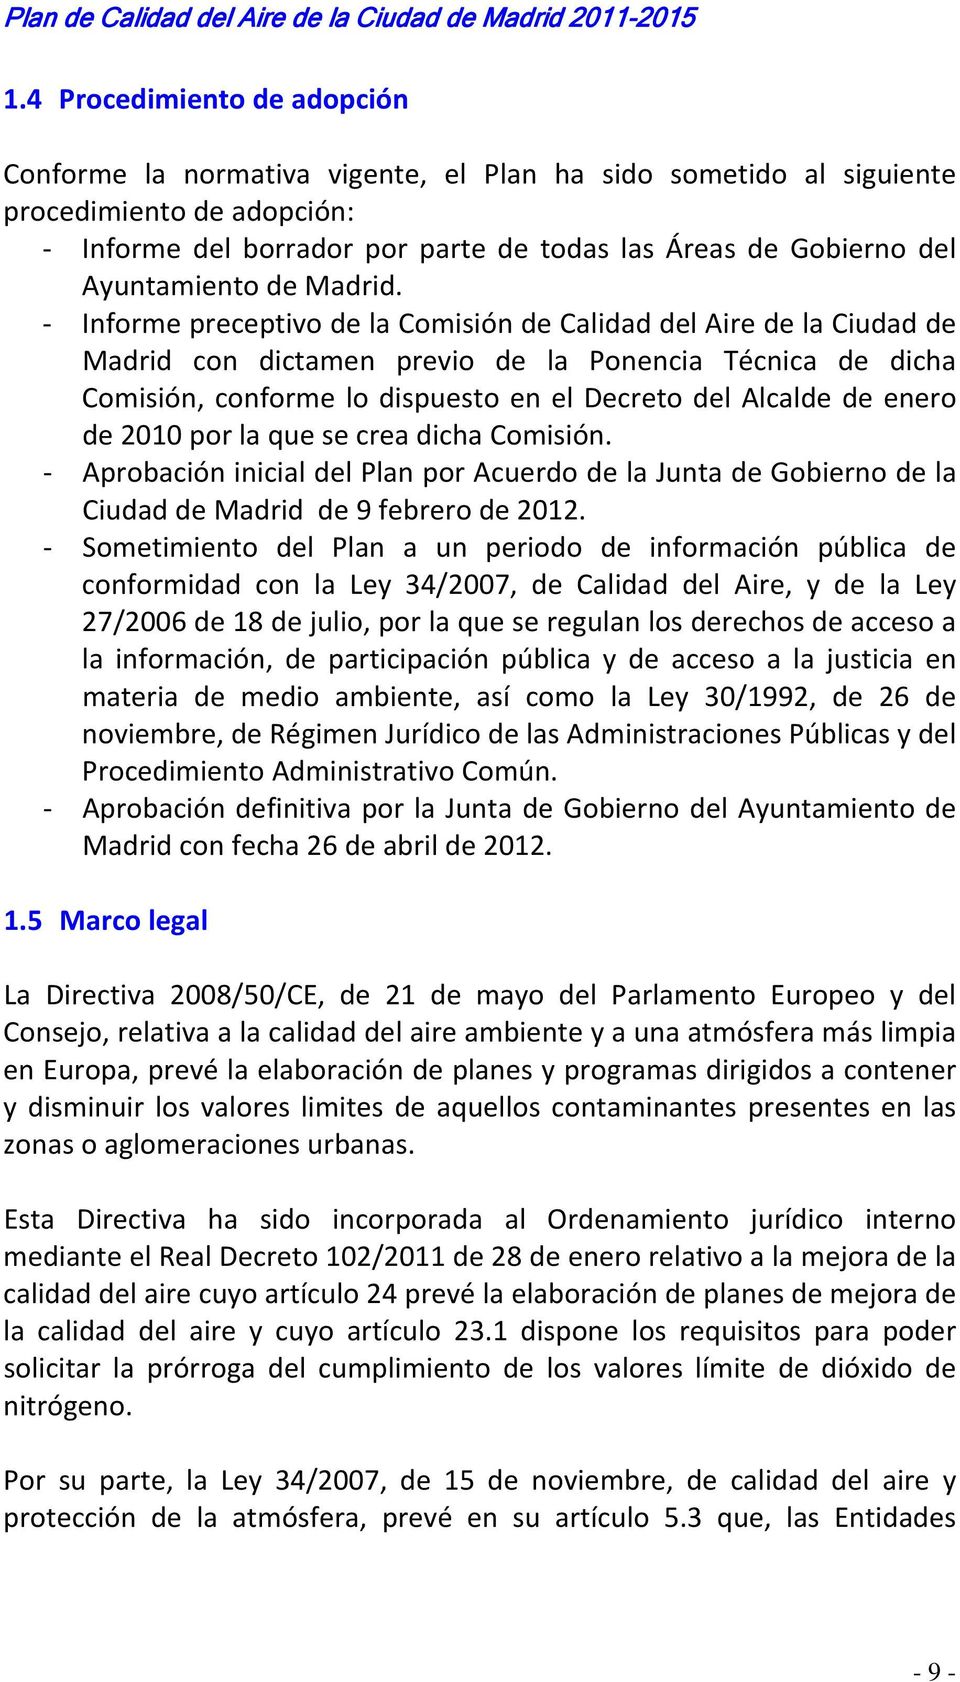 Informe preceptivo de la Comisión de Calidad del Aire de la Ciudad de Madrid con dictamen previo de la Ponencia Técnica de dicha Comisión, conforme lo dispuesto en el Decreto del Alcalde de enero de